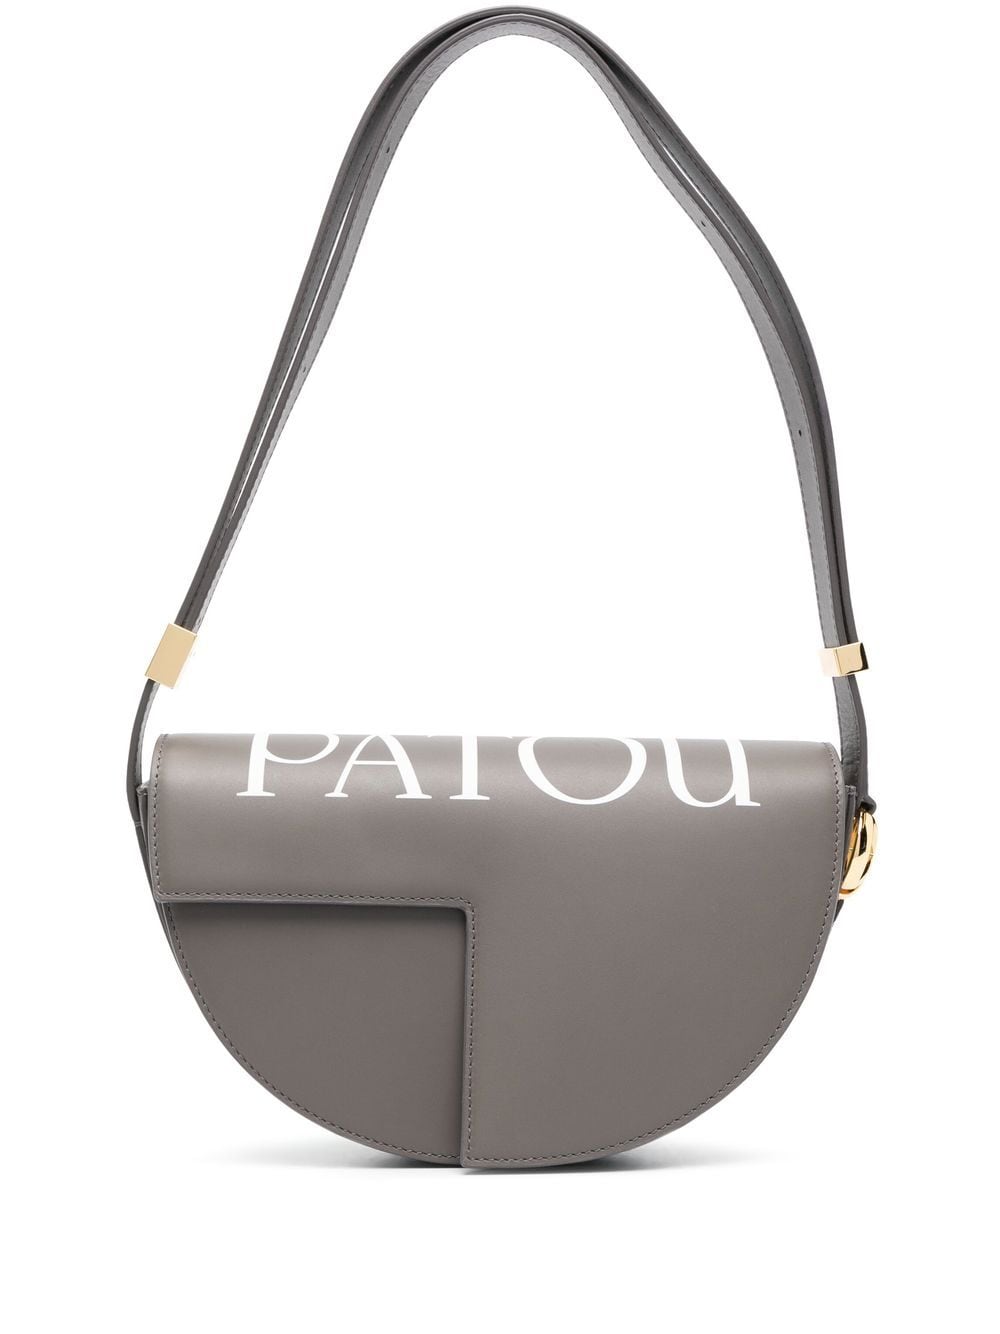 Patou Le Patou logo-print shoulder bag - Grey von Patou